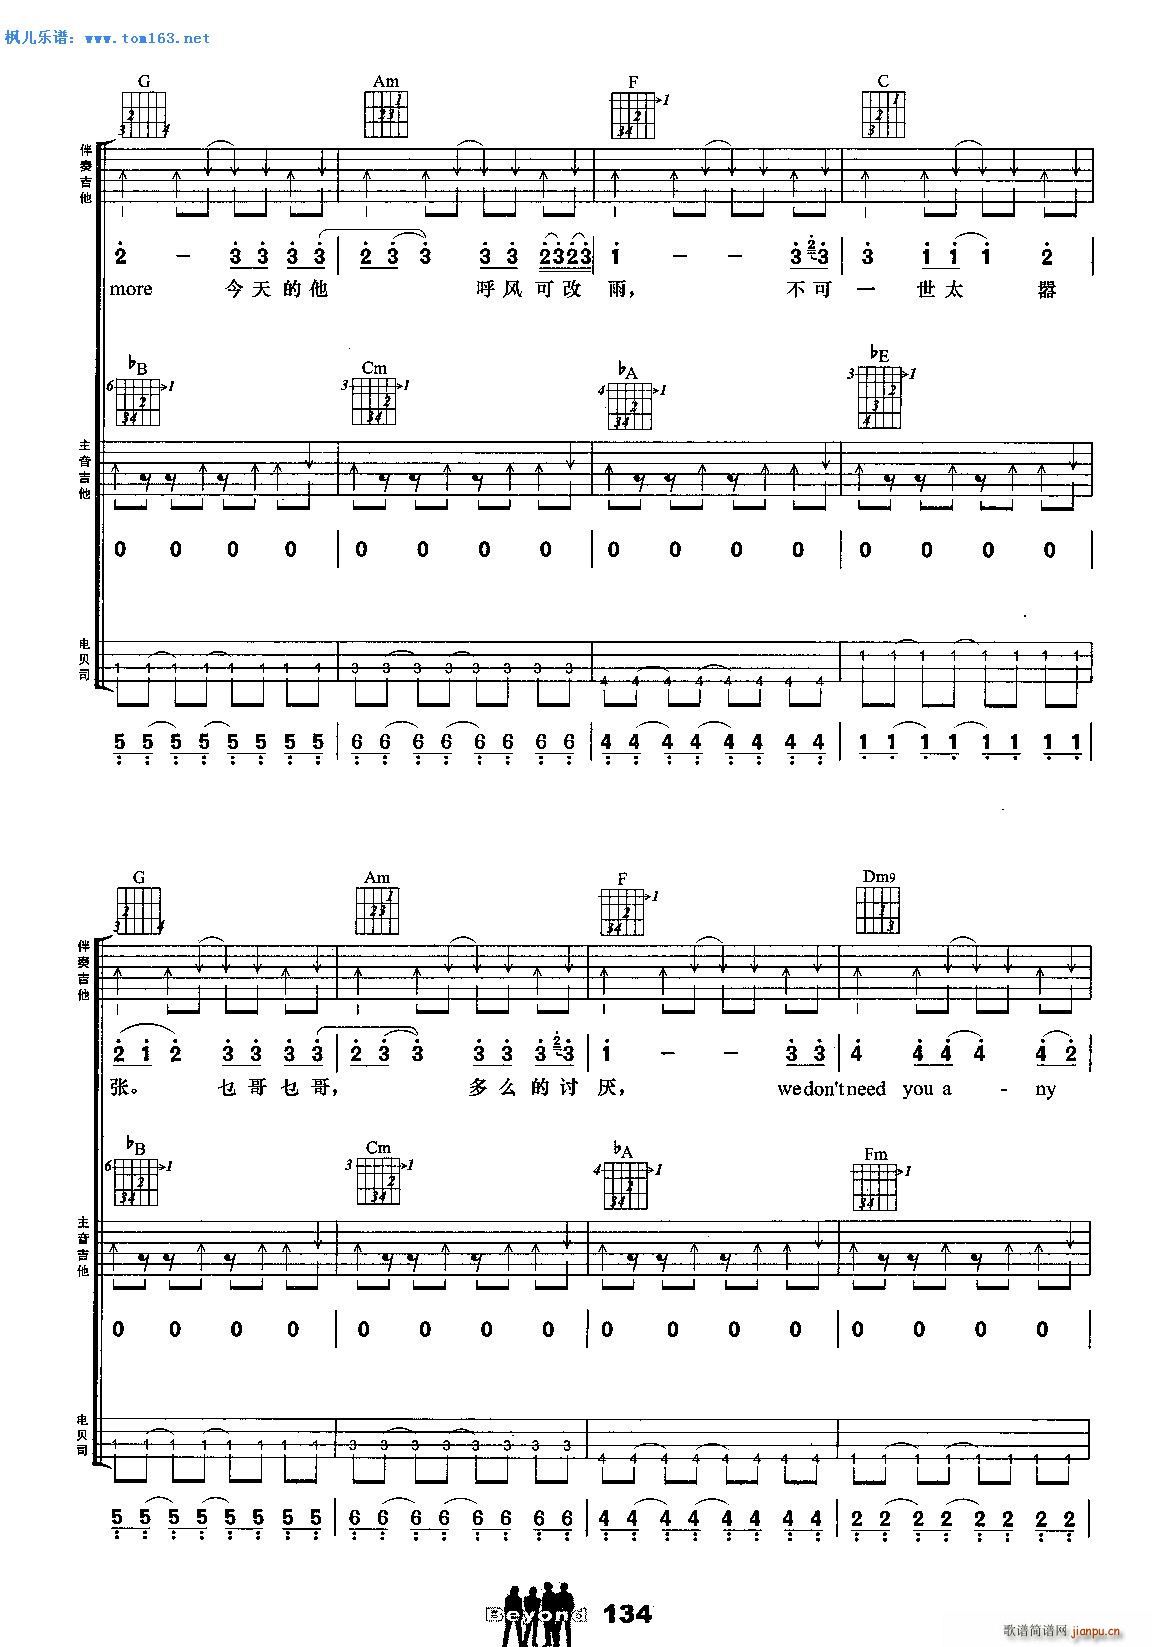 BEYOND乐队吉他组合弹唱乐曲《不可一世》黄家驹词曲-歌手吉他谱集 - 乐器学习网